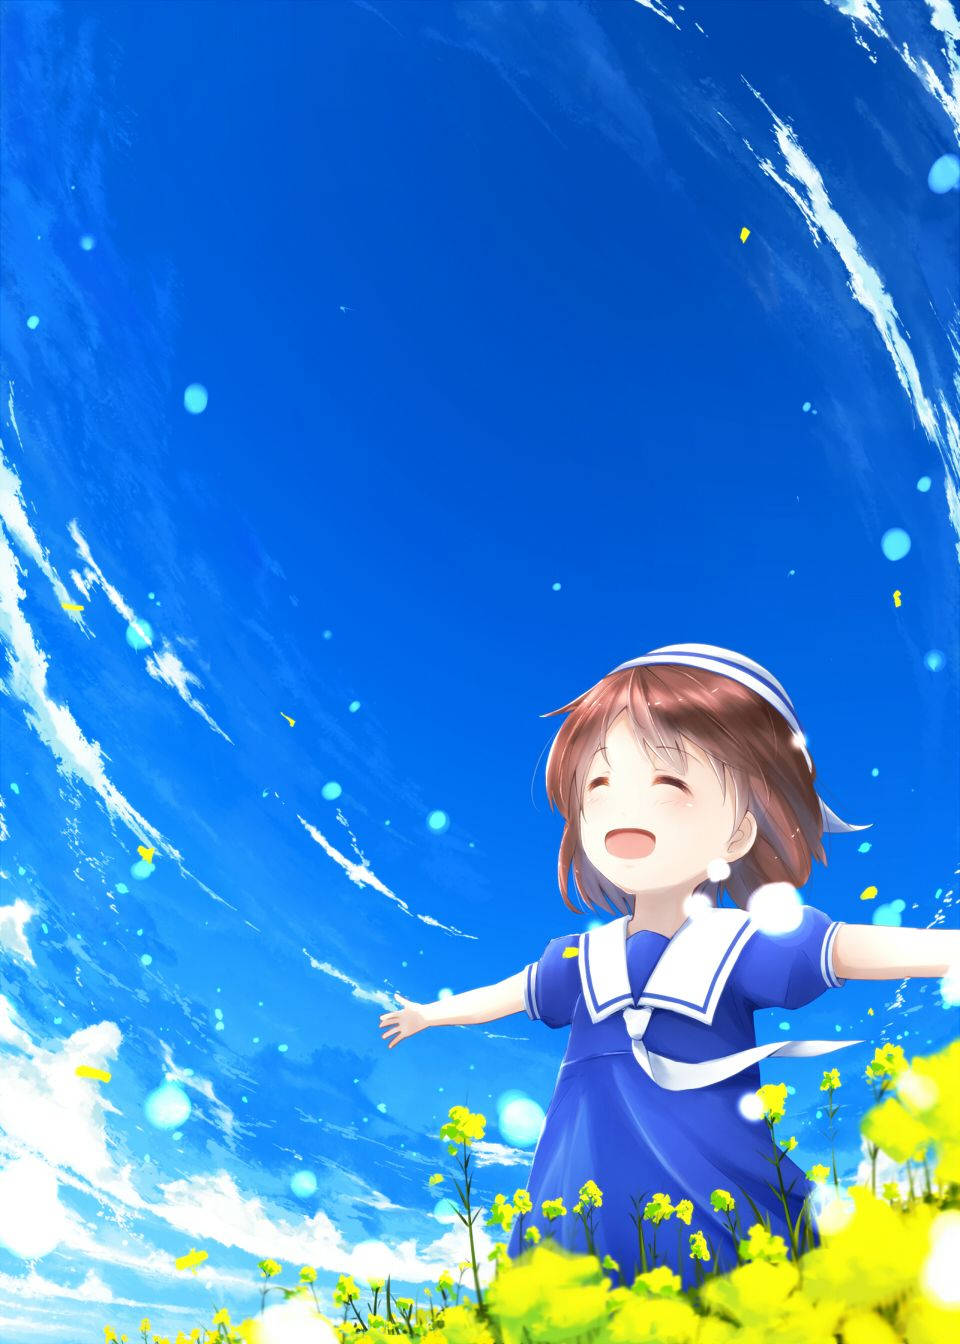 Blissful Ushio Clannad Background